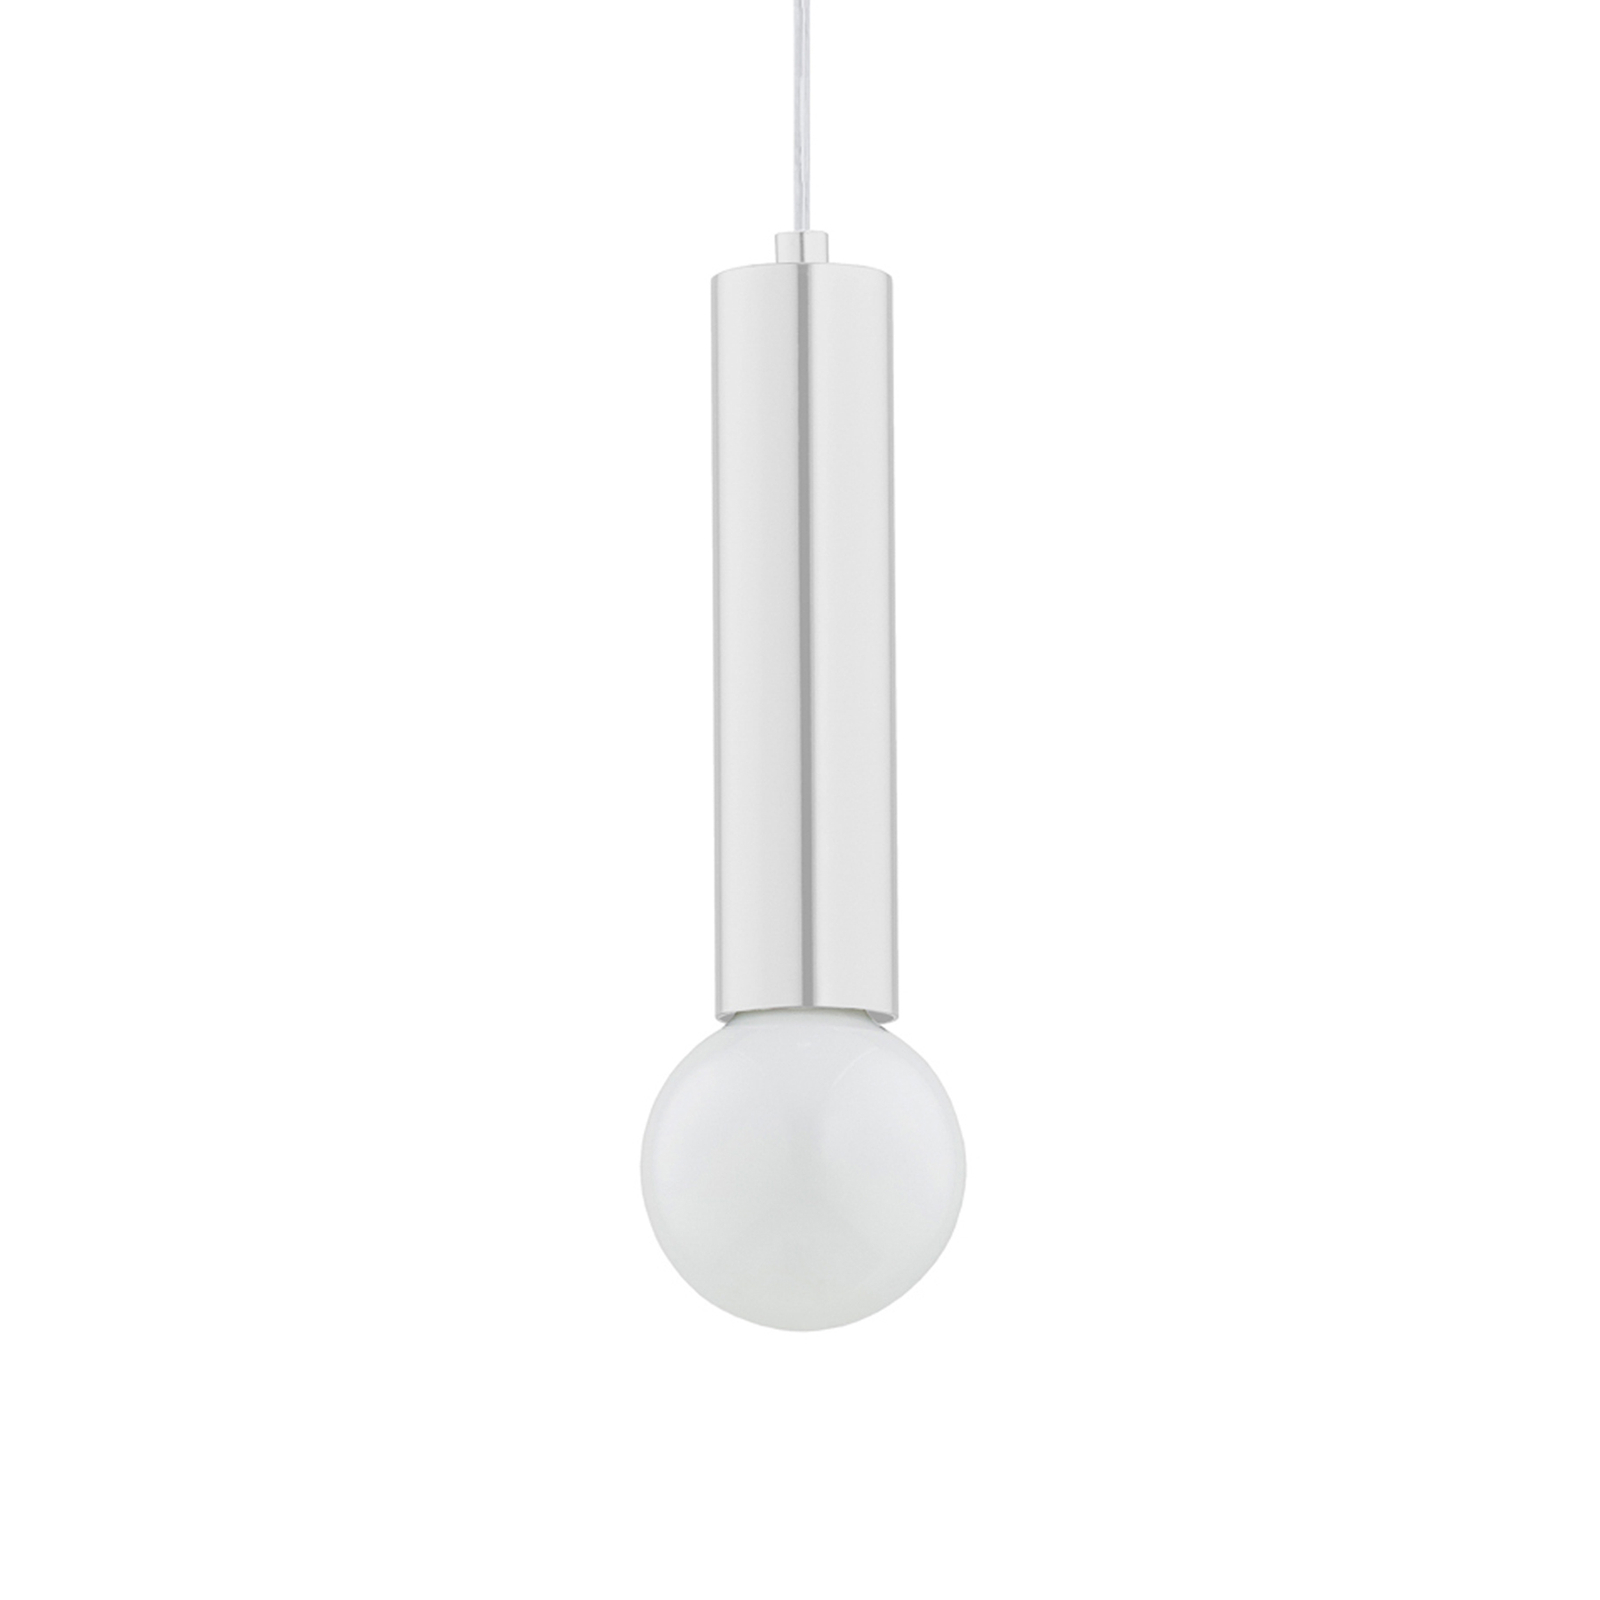 Jazz pendant light, one-bulb, white